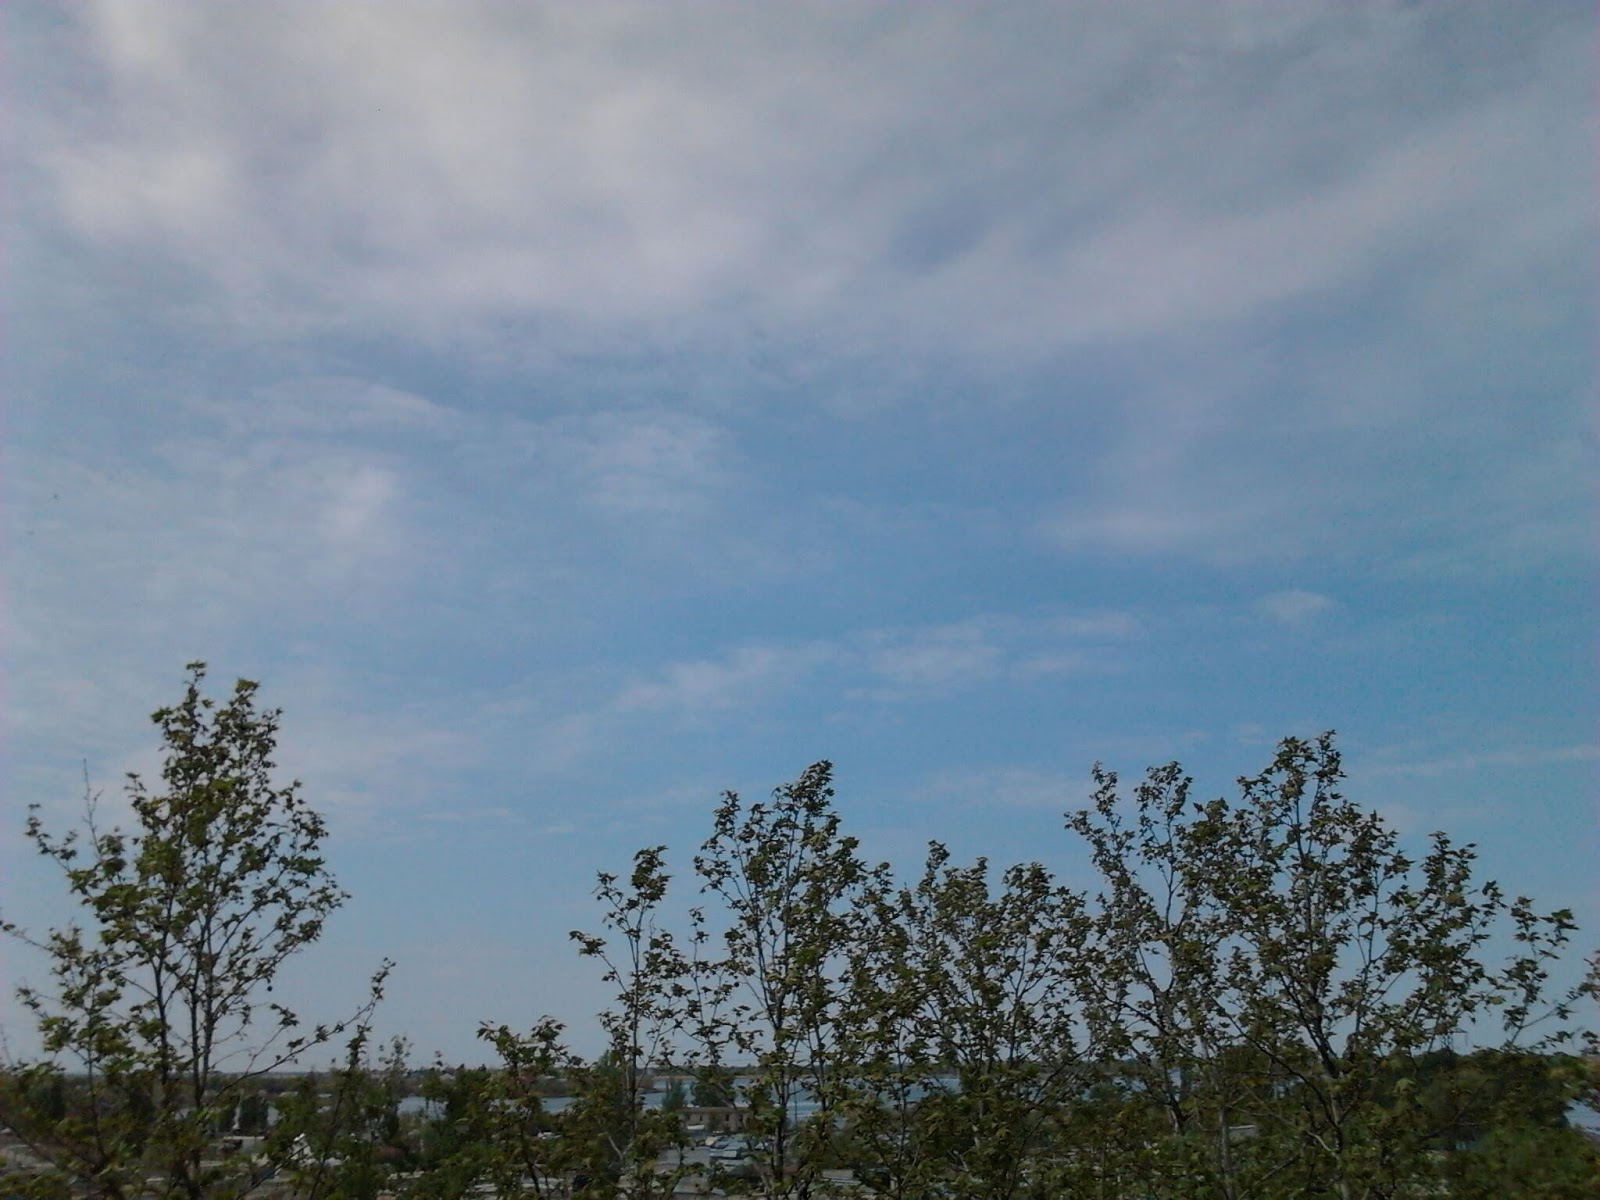 После стирки пылесборника.
Вид из лоджии, западная к дому сторона.
Погода в Херсоне: ветренно, облачно, солнечно / image25 / 2020.05.01 / 10:57